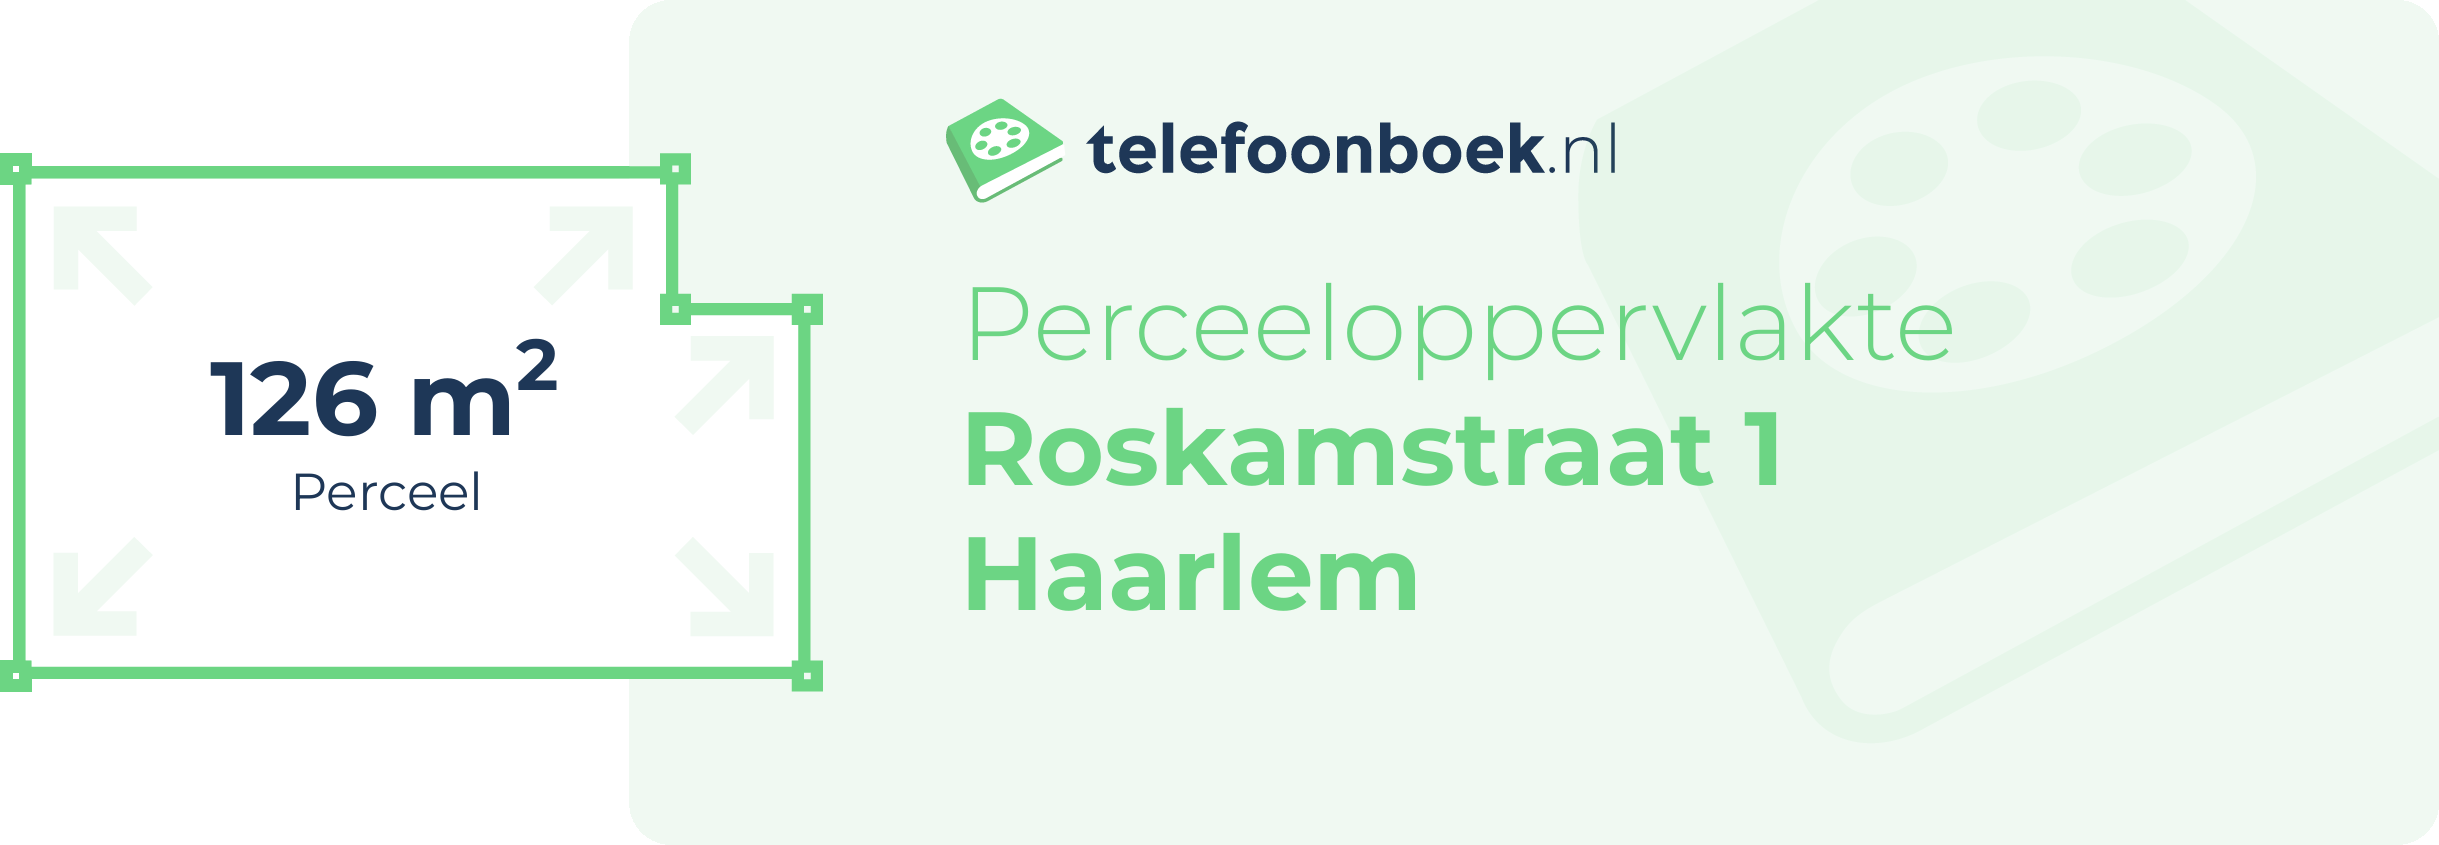 Perceeloppervlakte Roskamstraat 1 Haarlem